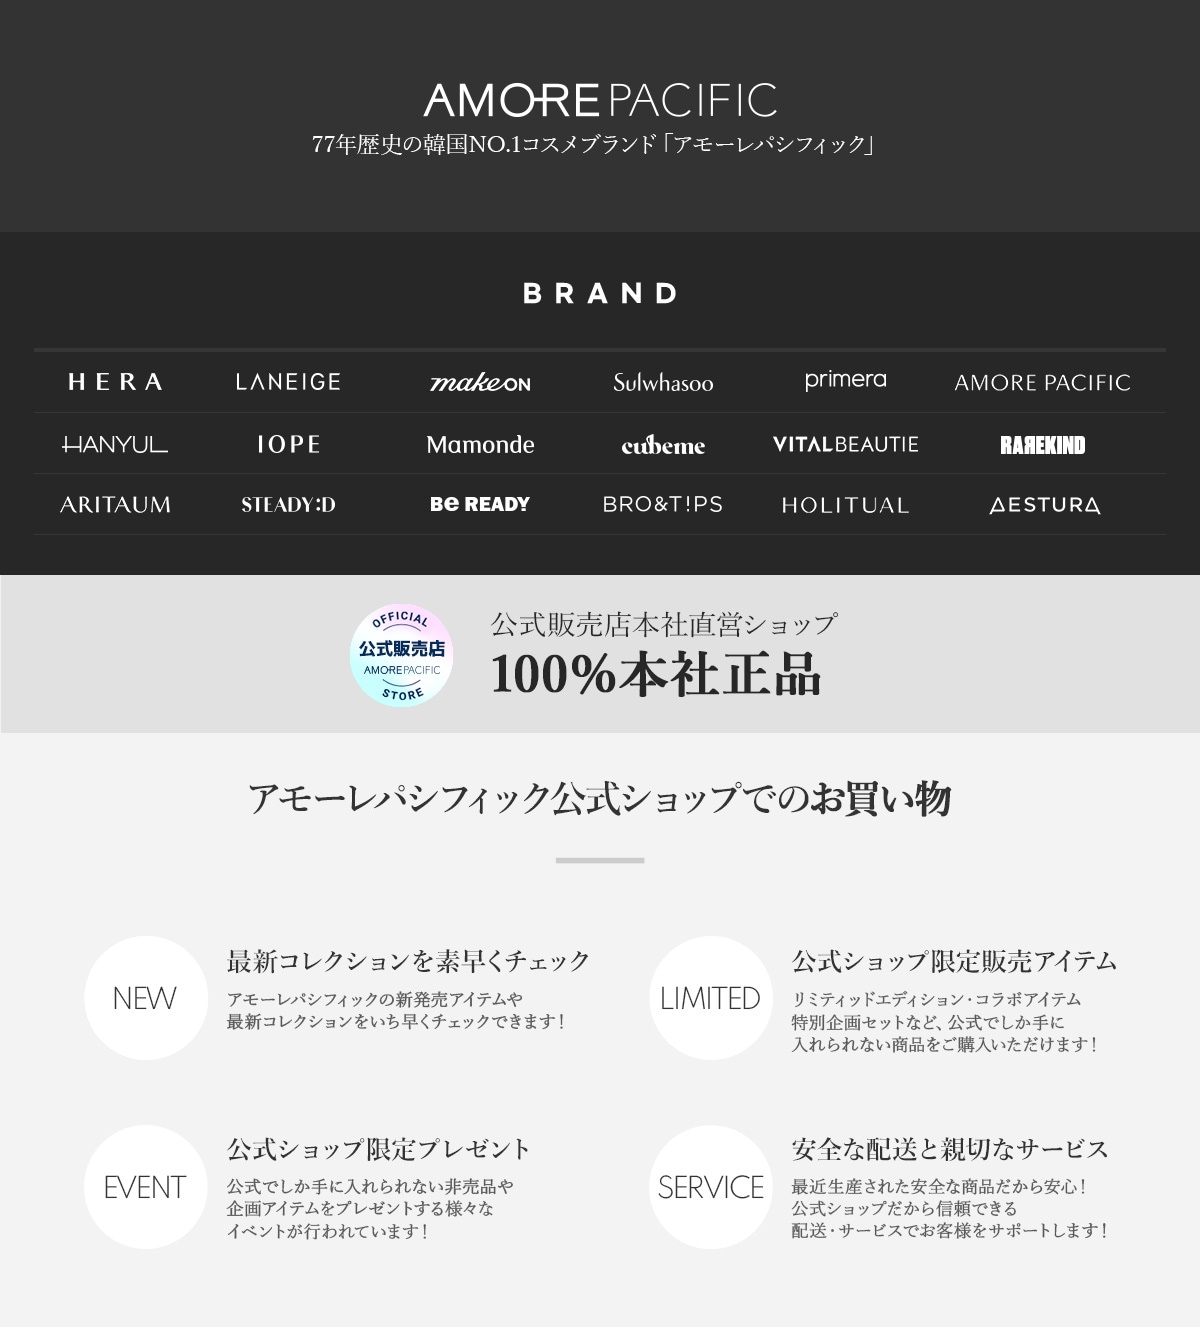 Qoo10 – 「AMORE PACIFIC 公式ショップ」のショップページです。